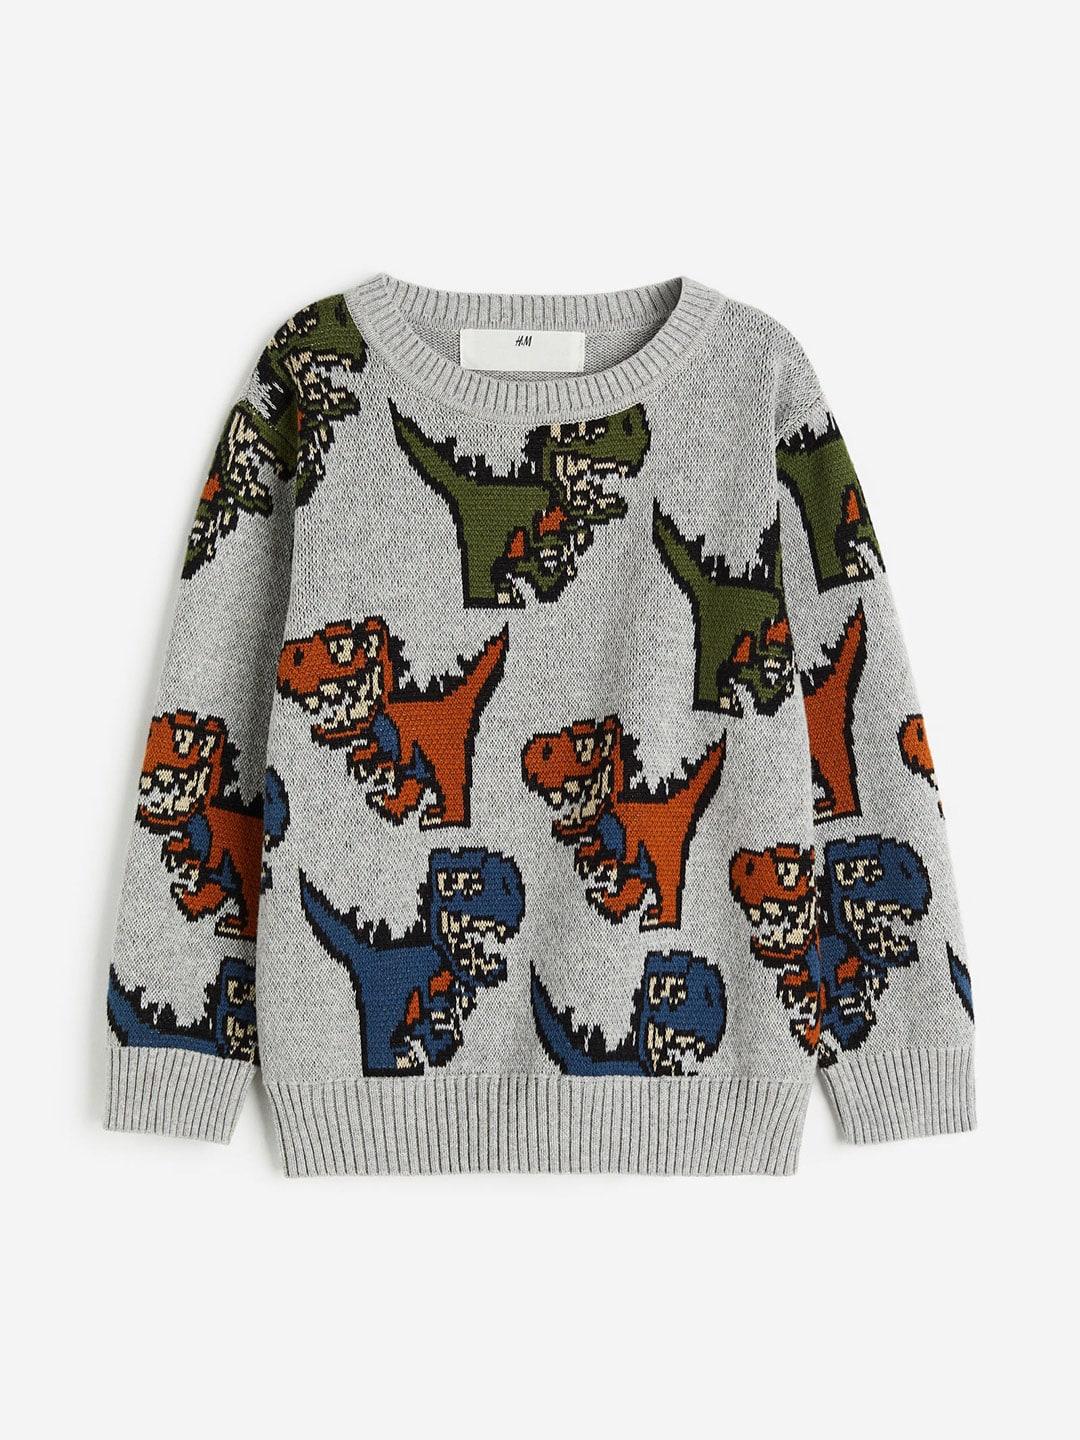 h&m-boys-jacquard-knit-jumper-sweaters